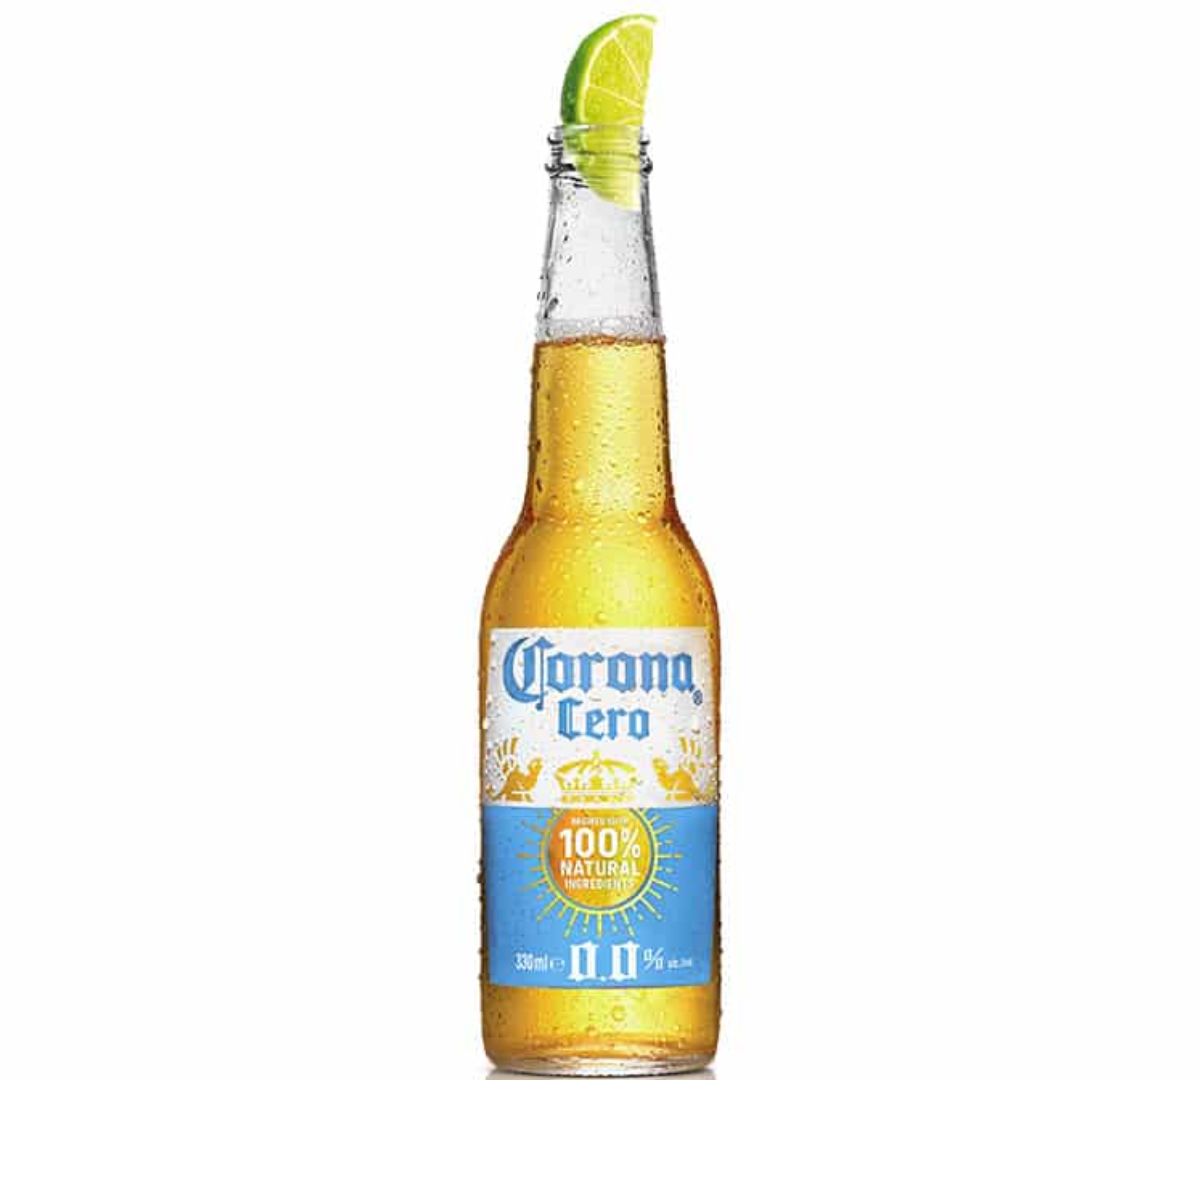 Corona Cero 0,33l fl